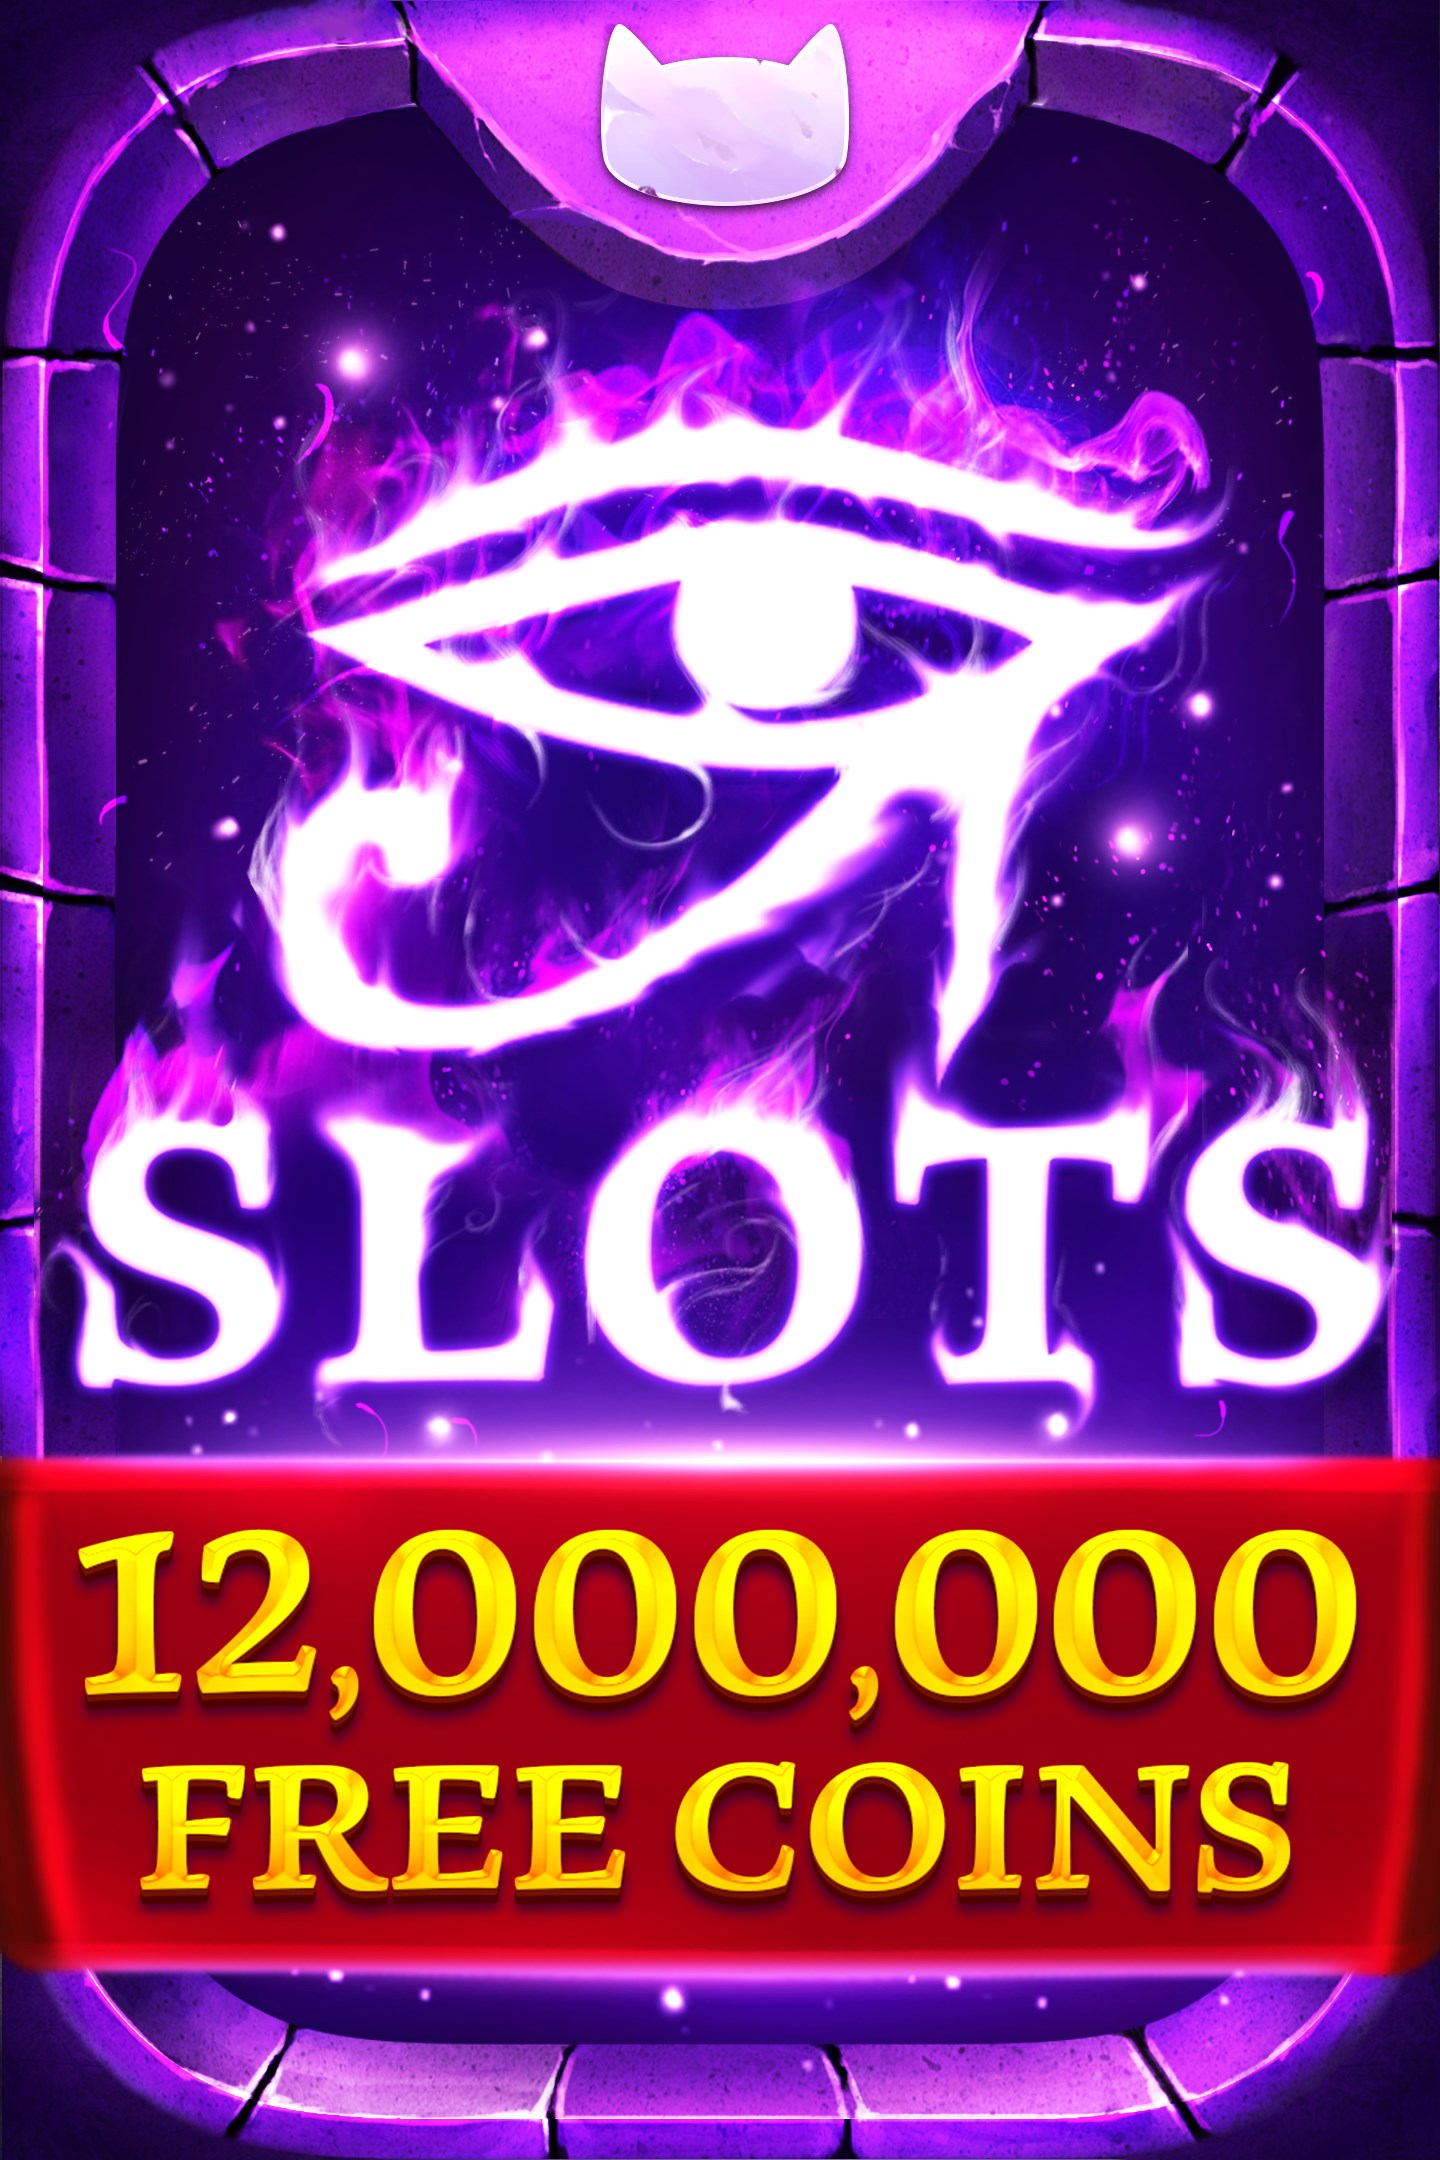 Slots era free casino slot machines